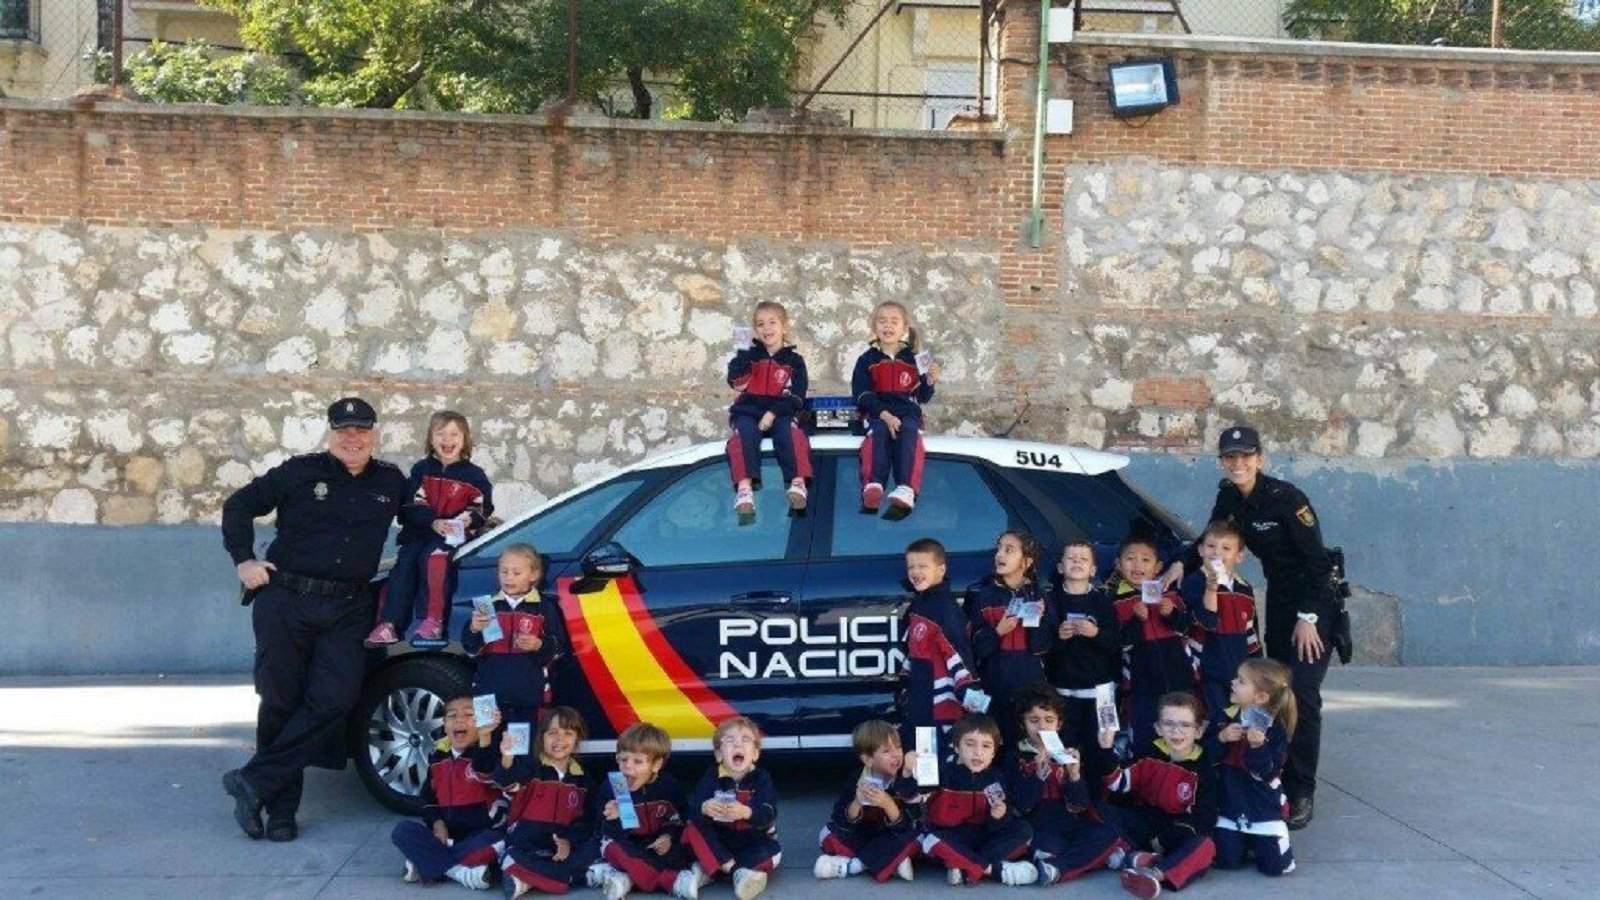 La policia espanyola fa un tuit sobre les escoles (i se li gira en contra)